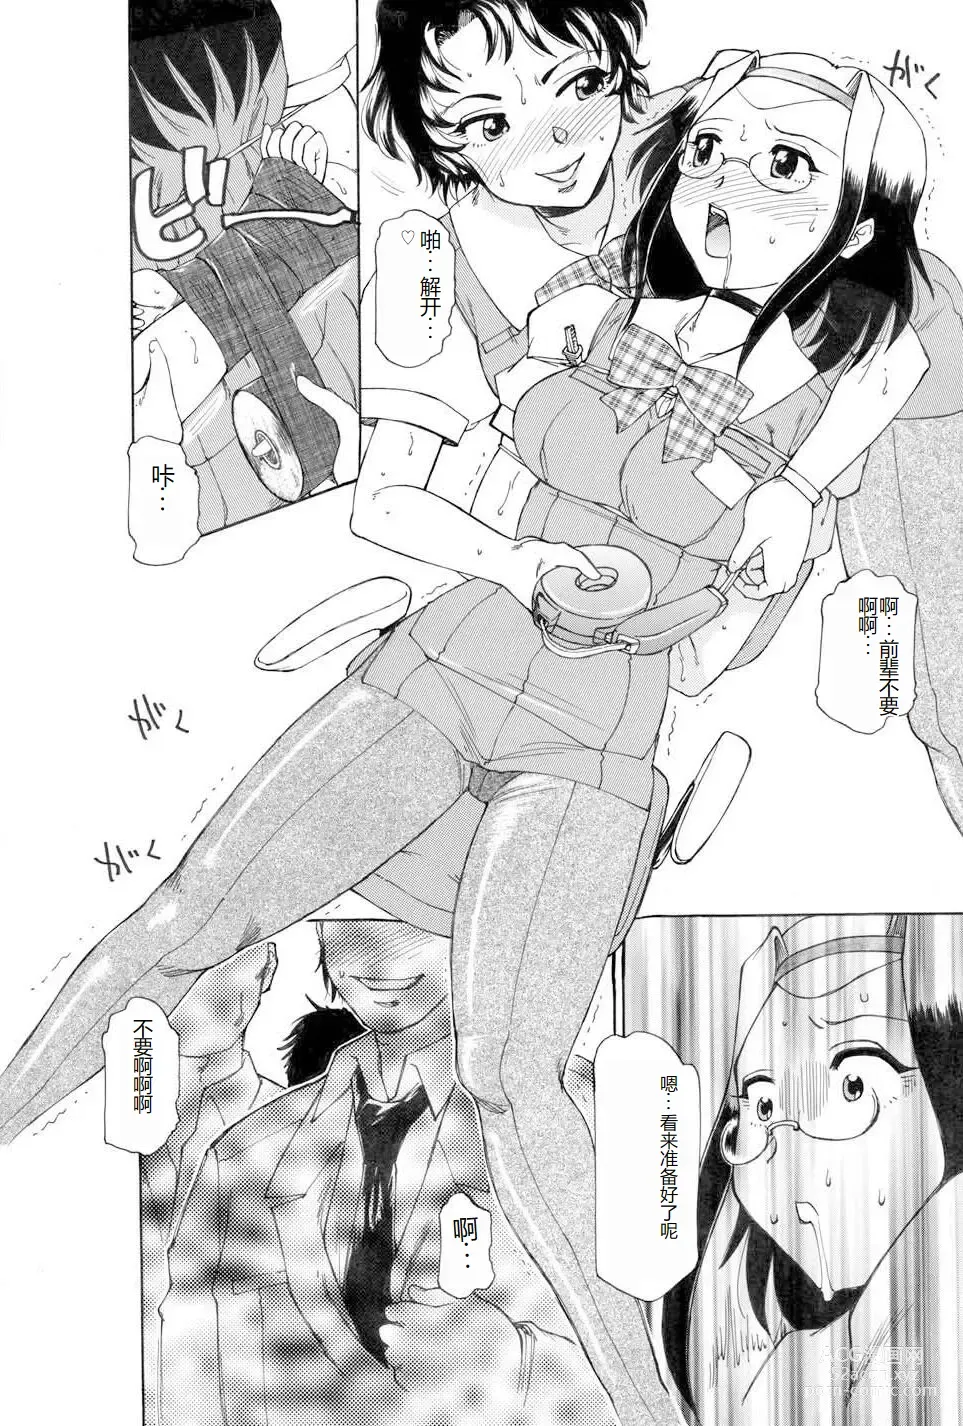 Page 8 of manga Kochira Soumubu Niku Houshika